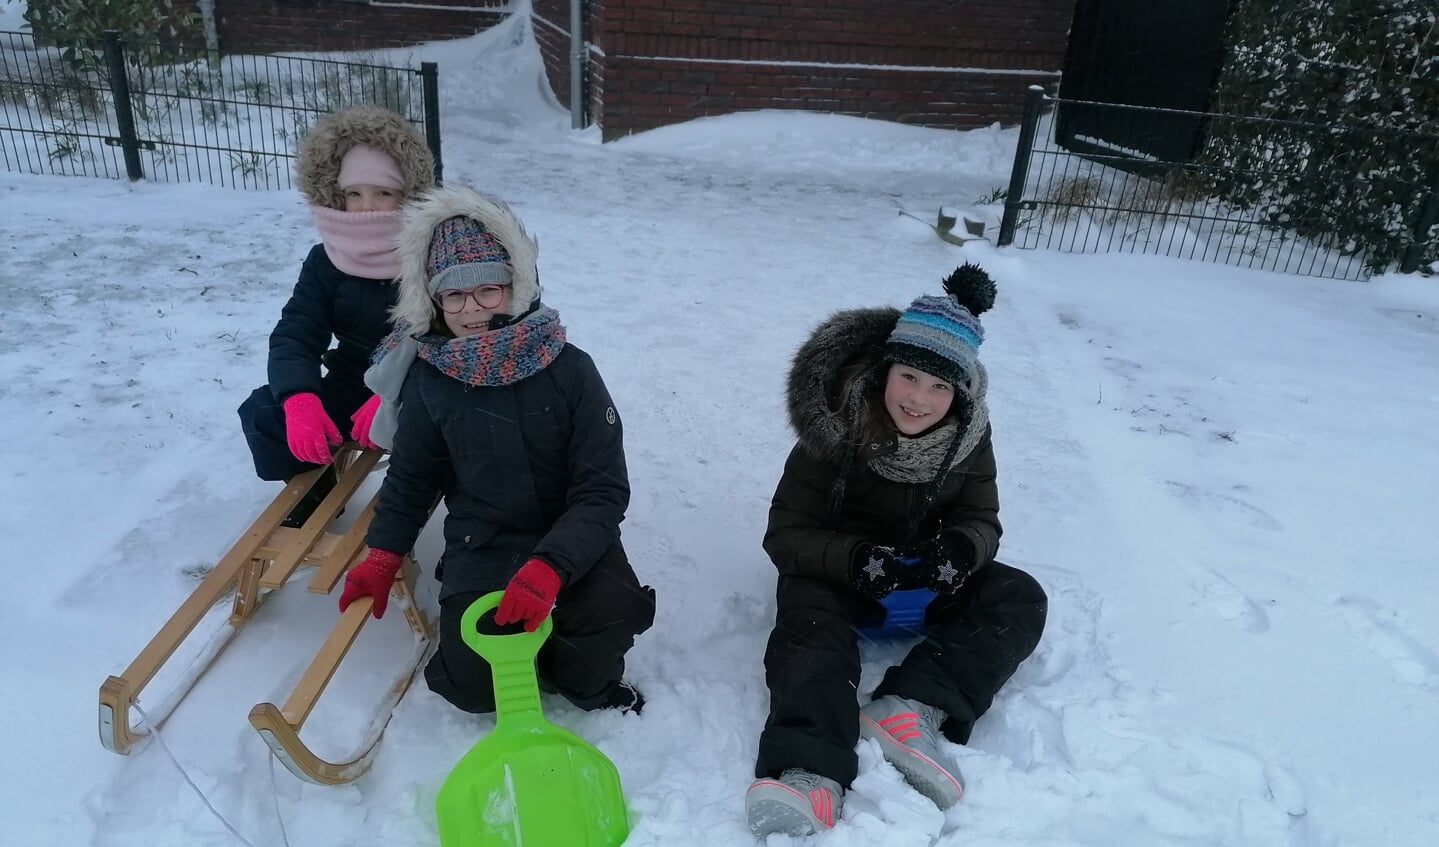 Sanne, Emma en Nikki Heijmans waren vroeg opgestaan om heerlijk in de sneeuw te spelen.
